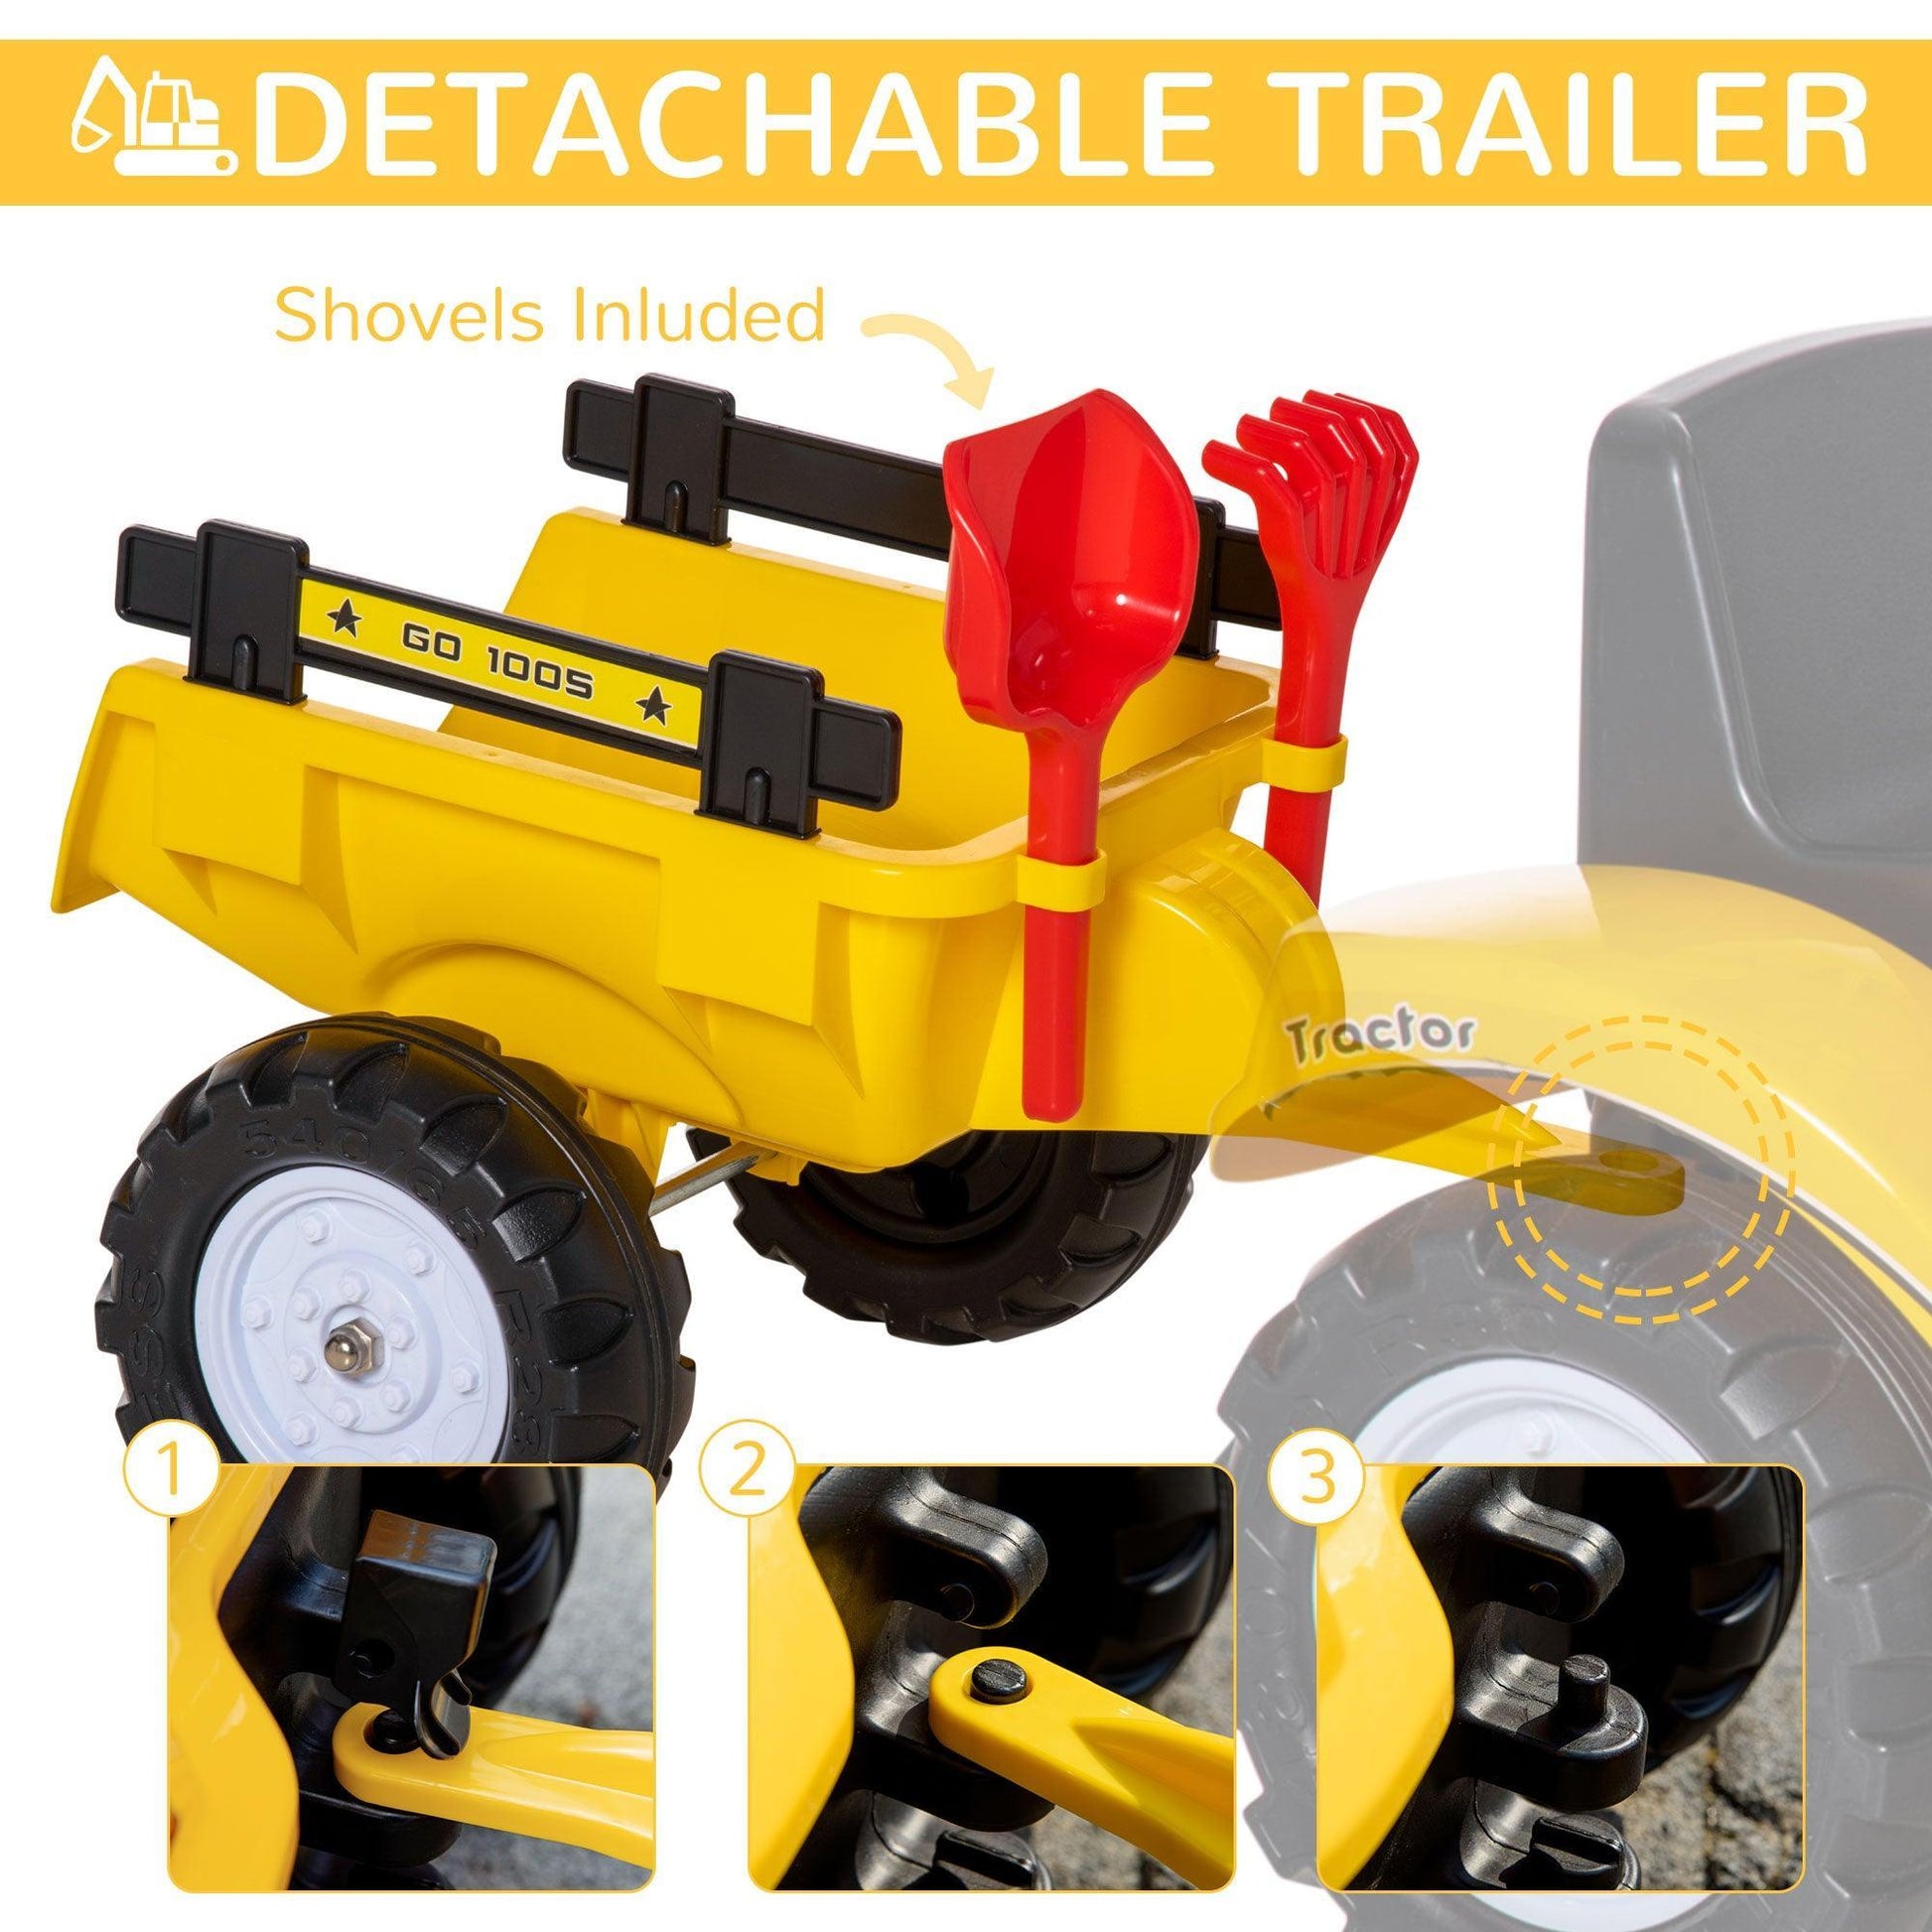 HOMCOM Pedal Digger Toy Car with Trailer - ALL4U RETAILER LTD